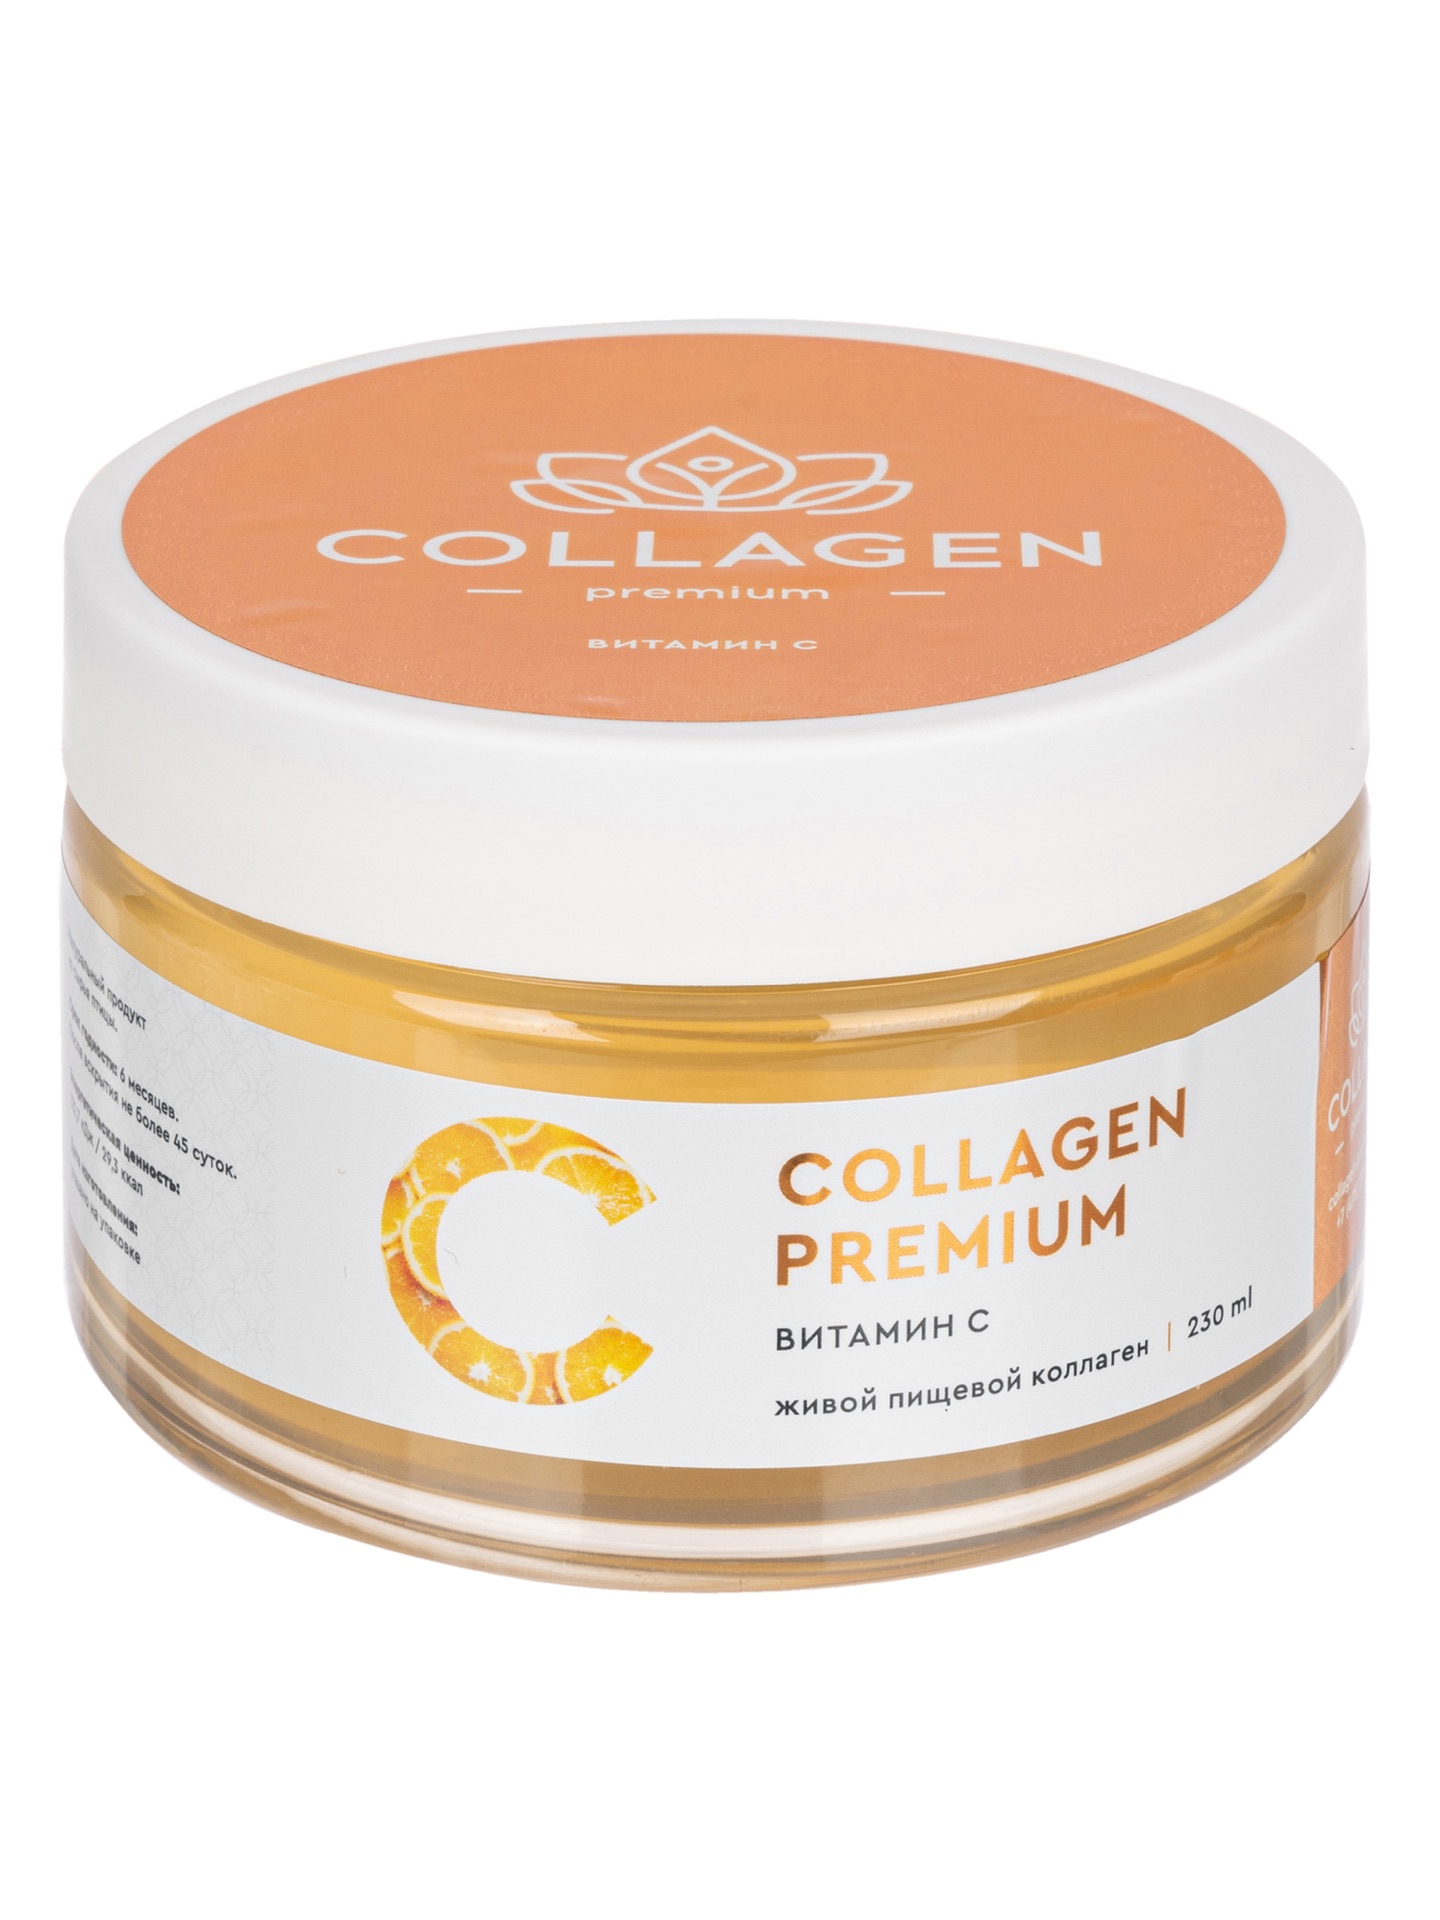 Collagen-premium c витамином С